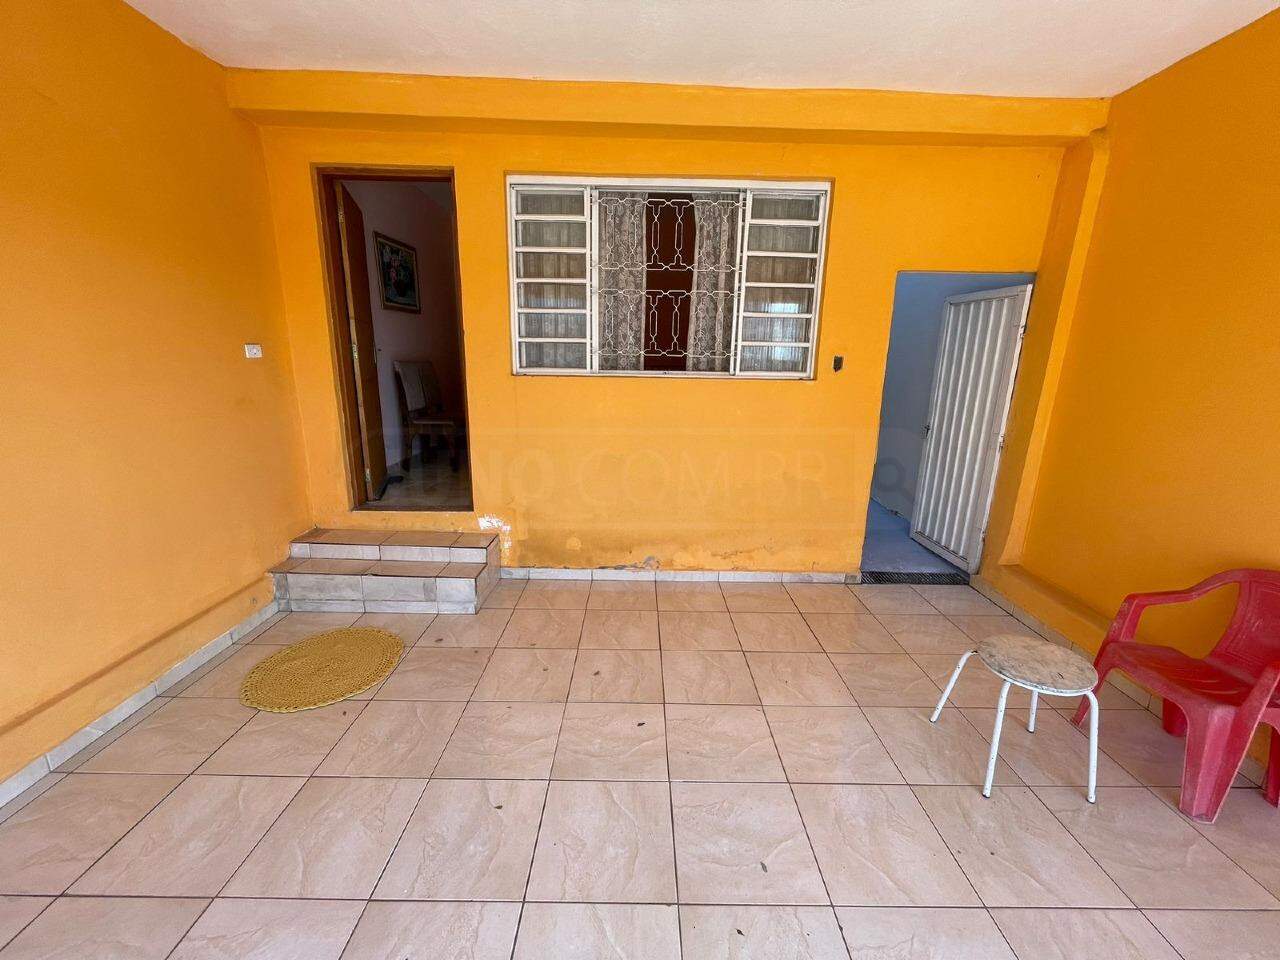 Casa à venda, 3 quartos, sendo 1 suíte, 2 vagas, no bairro Jardim Algodoal em Piracicaba - SP